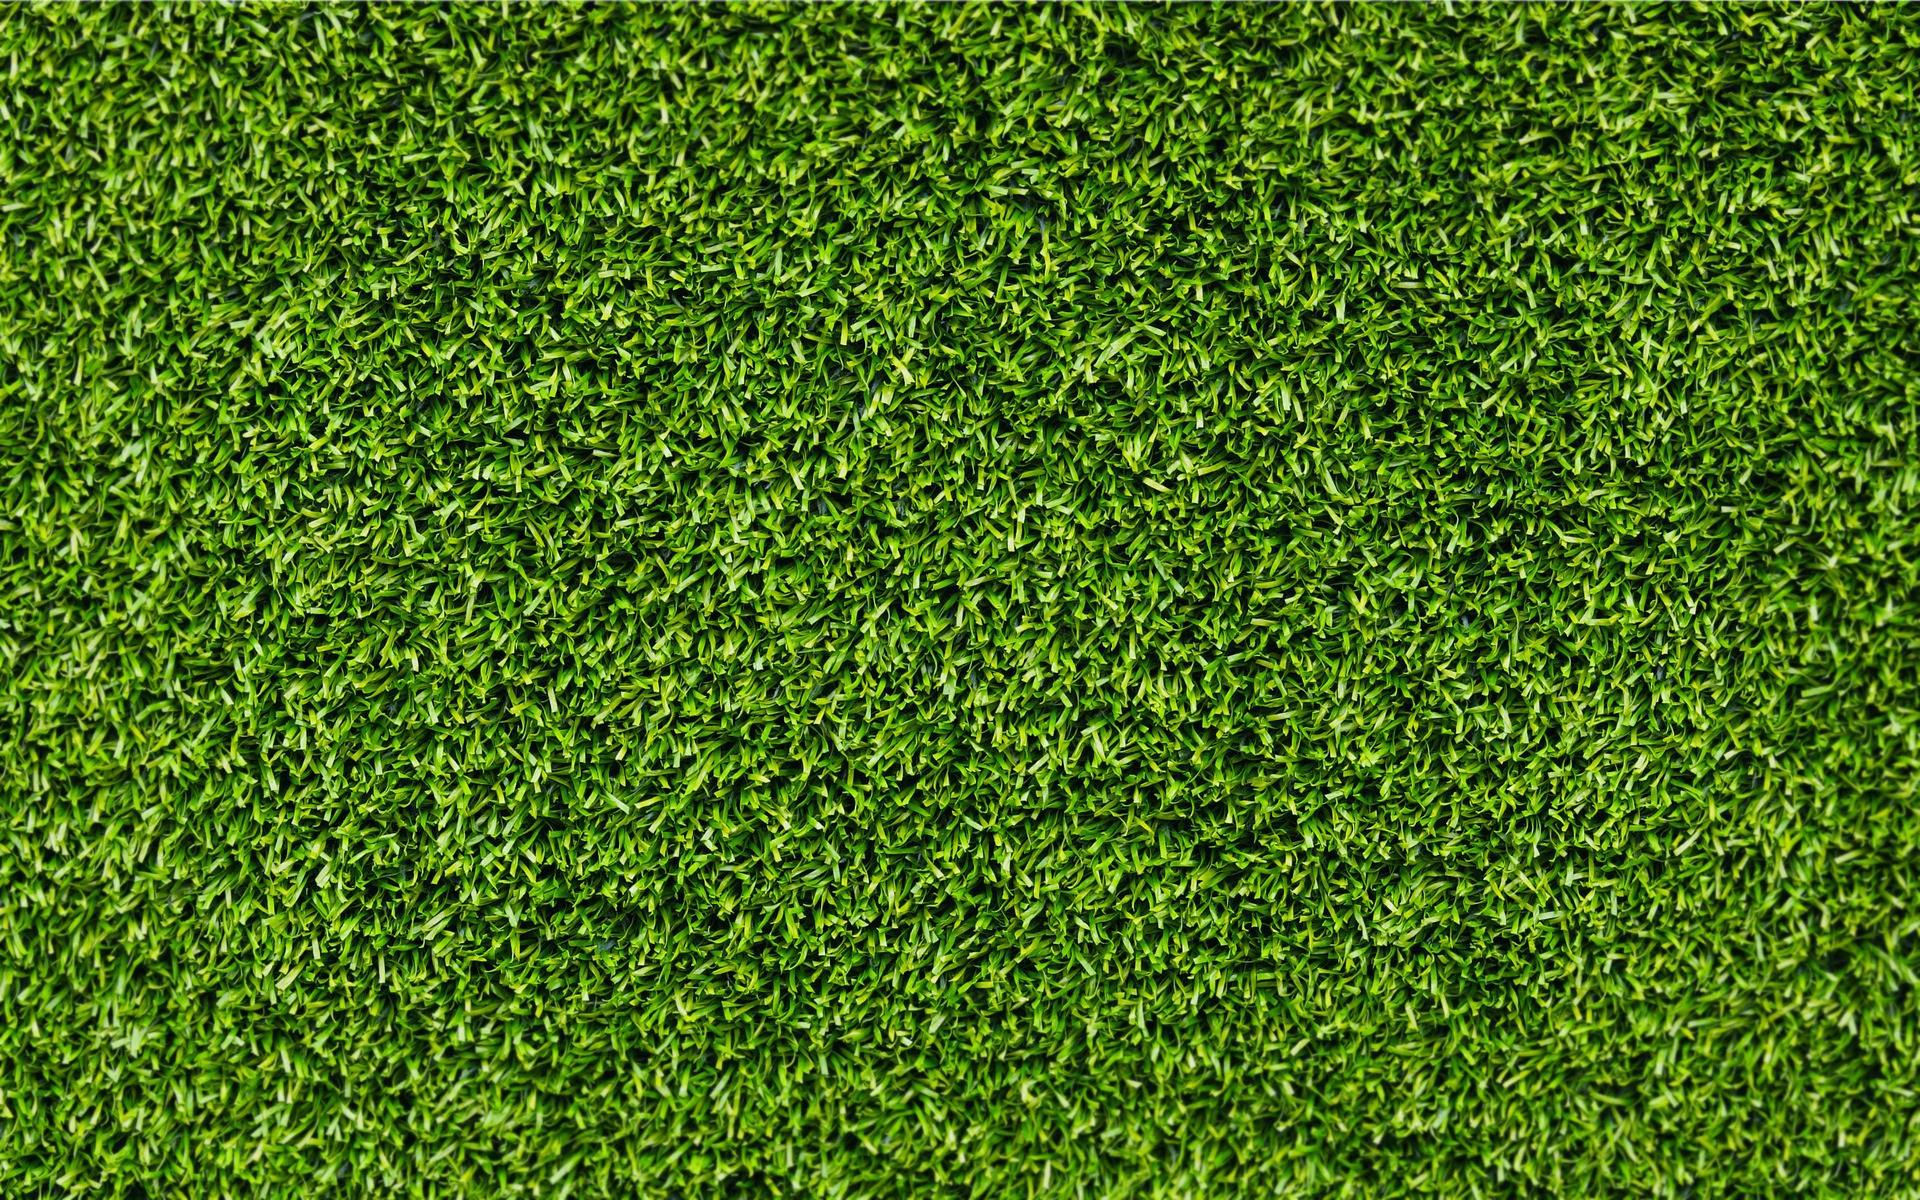 Hd Grass Wallpaper